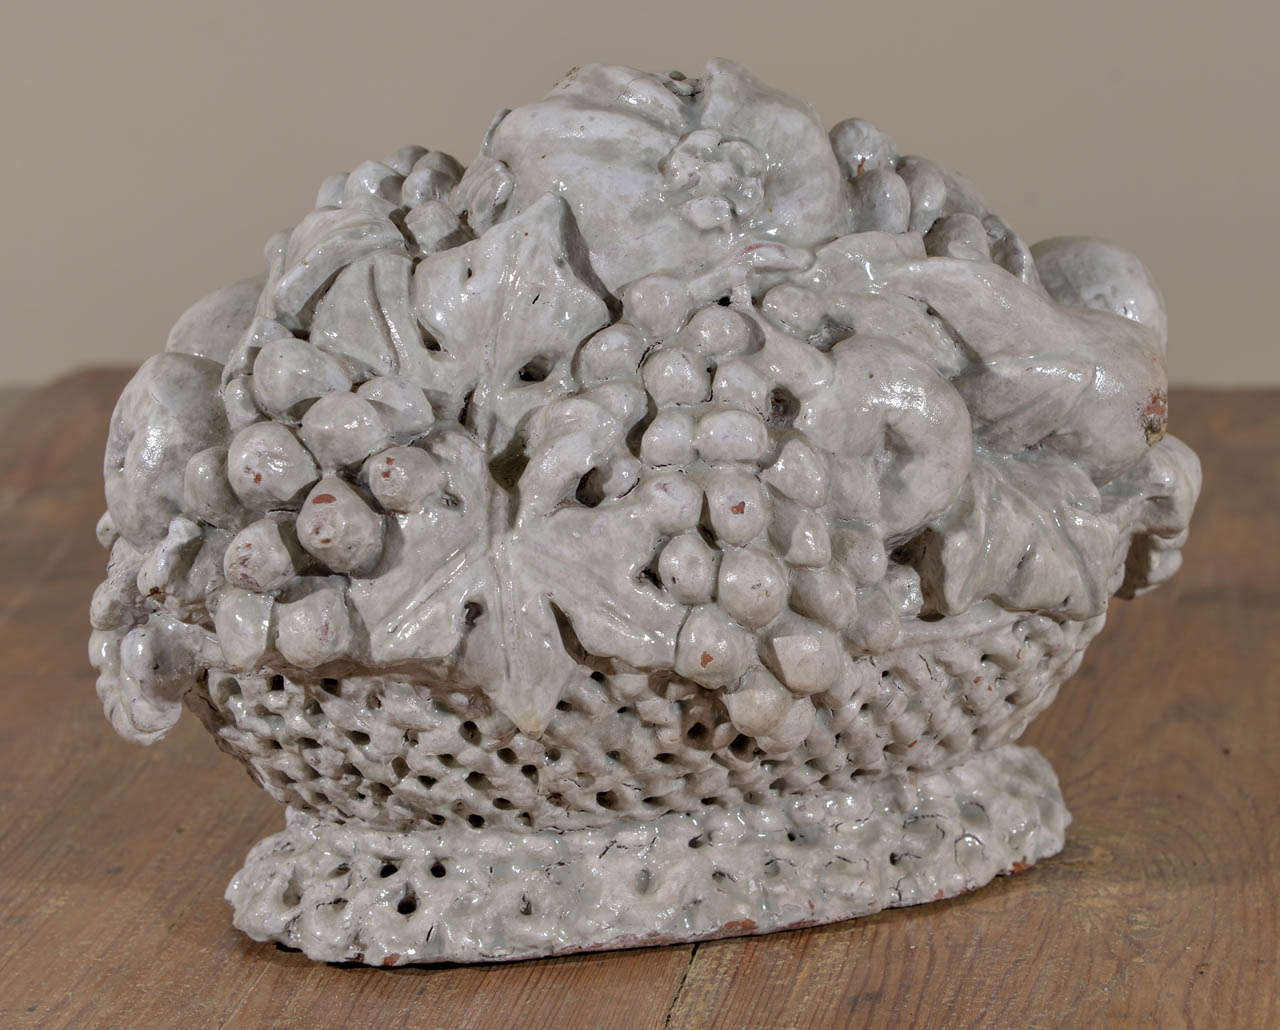 19th century tin glazed terracotta fruit in basket, from Vernusse, France.